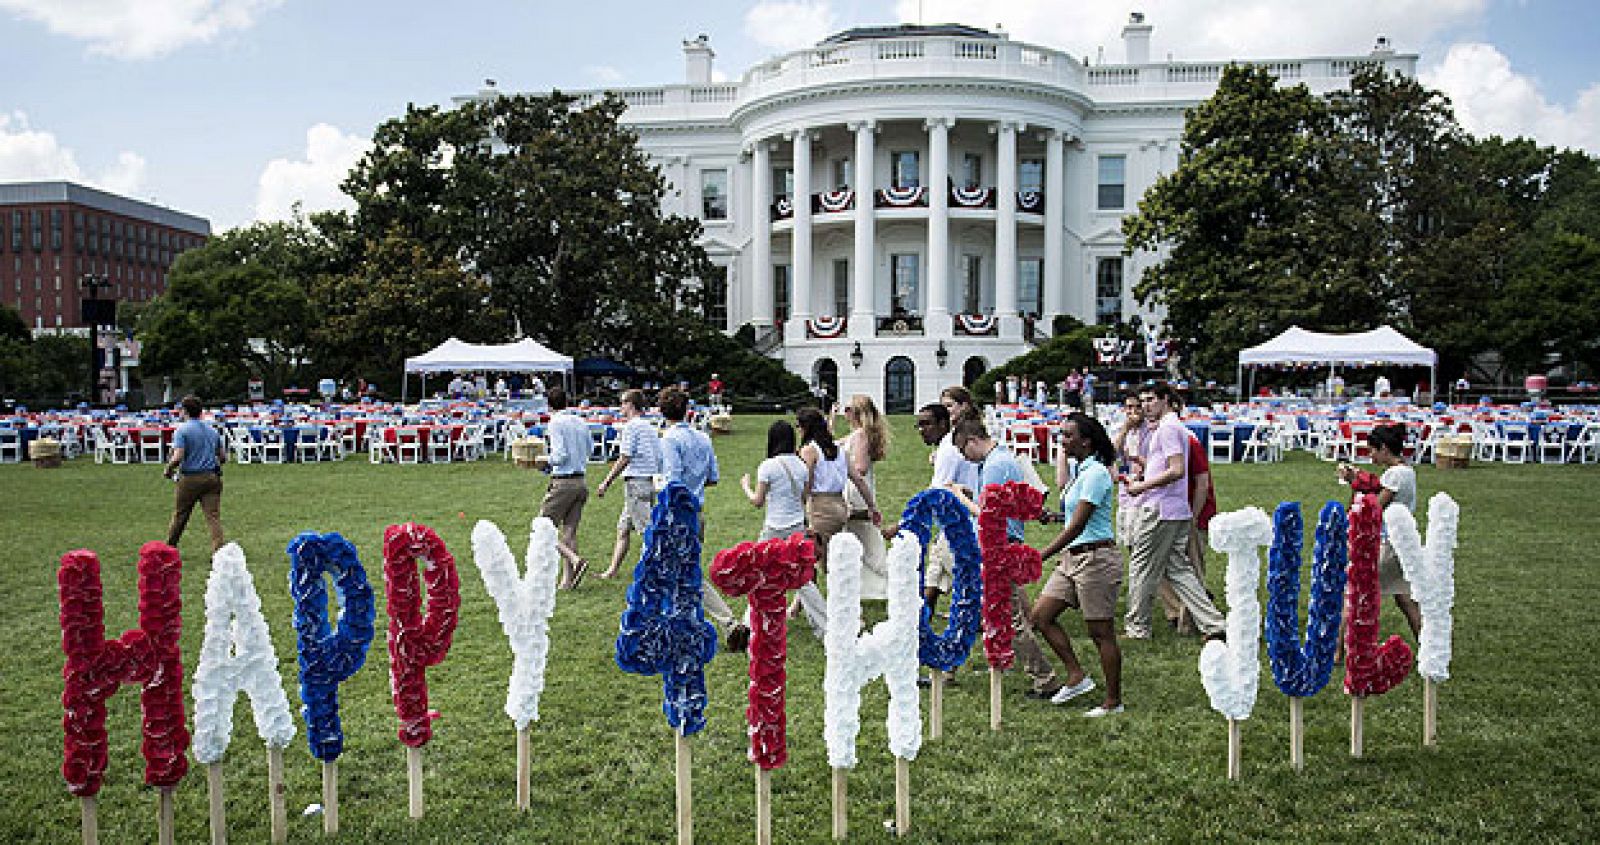 Los voluntarios llegan al jardín sur de la Casa Blanca el 4 de julio de 2013 en Washington. El país entero celebra el 237aniversario de la independencia de los Estados Unidos.